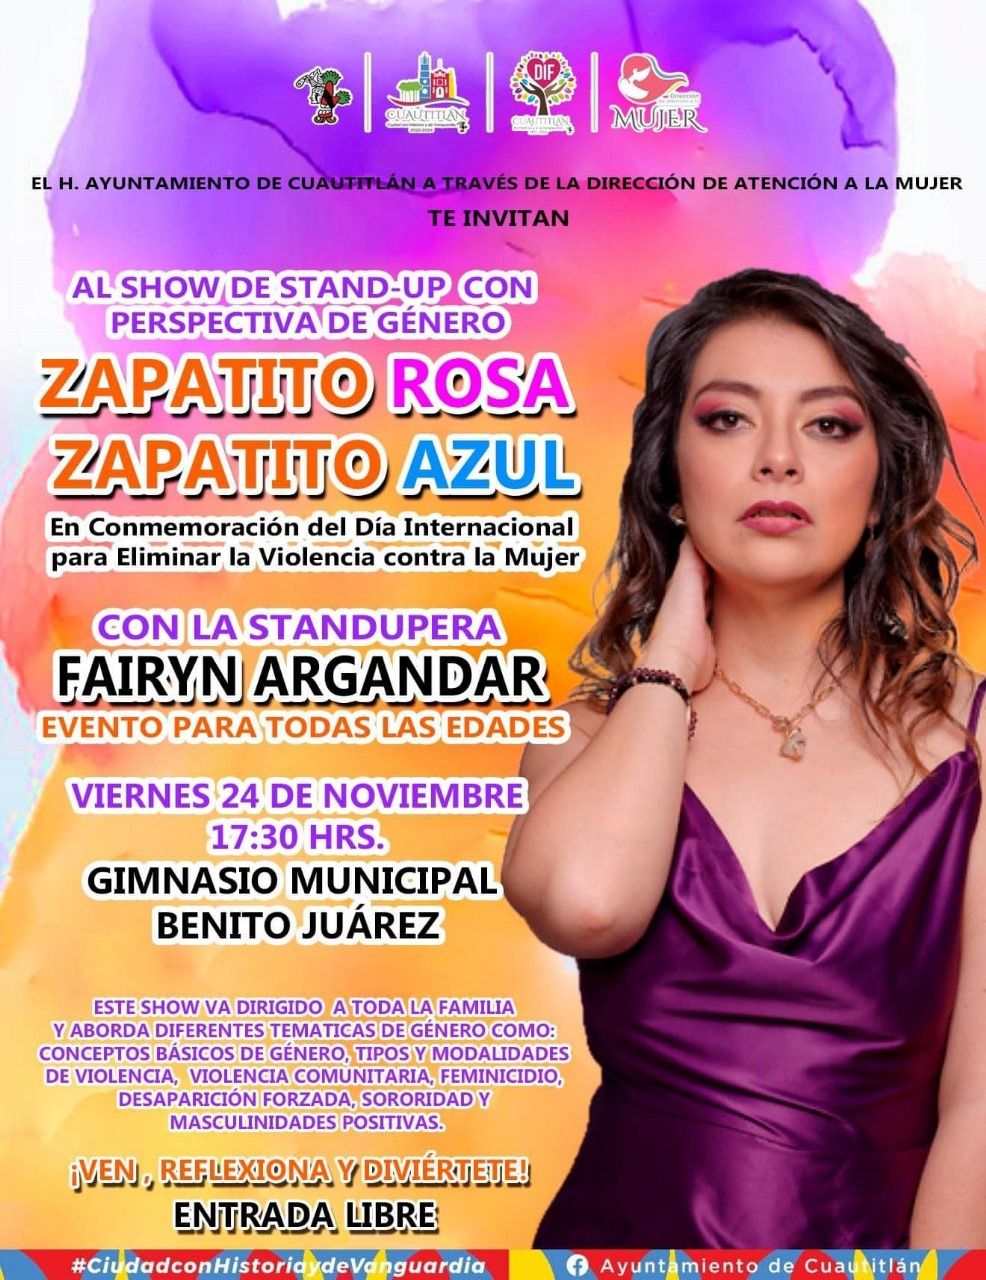 Gobierno de Cuautitlán conmemorara el Día Internacional para la eliminar la violencia contra la mujer con el show Stand-Up